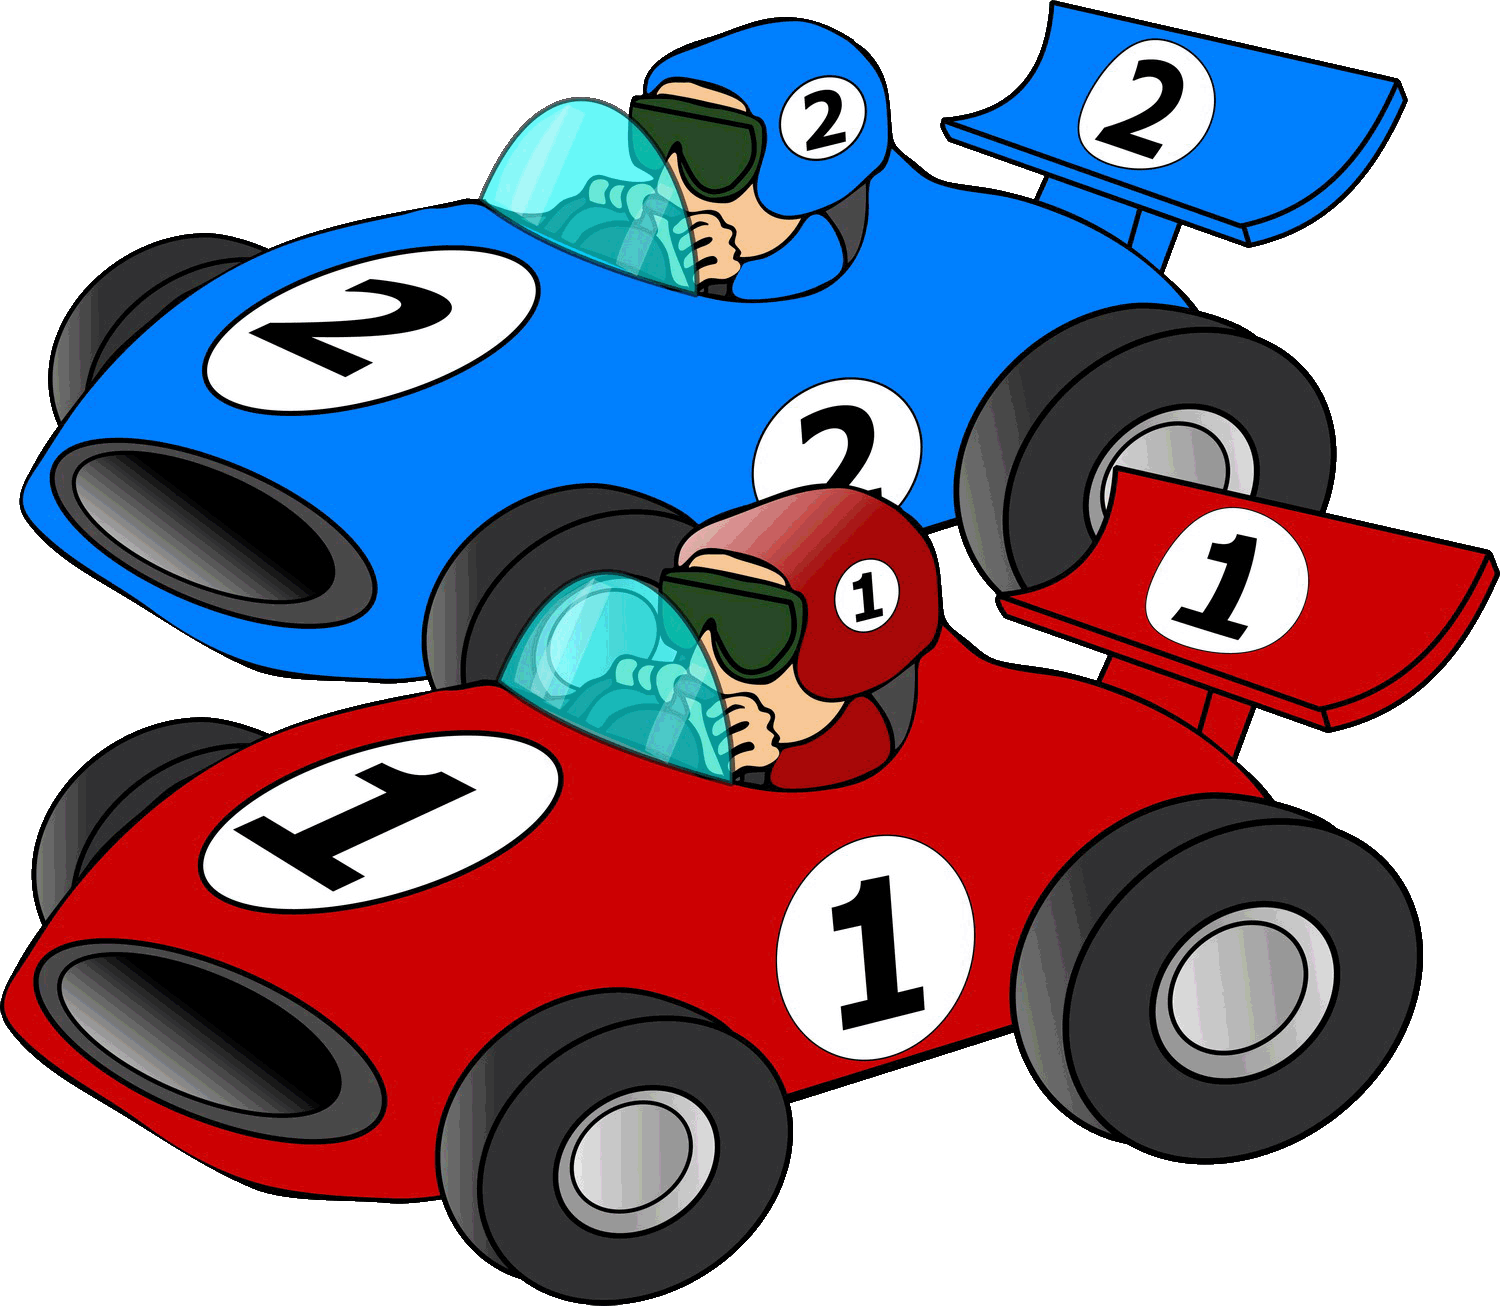 Go Car Race Cartoon - ClipArt Best